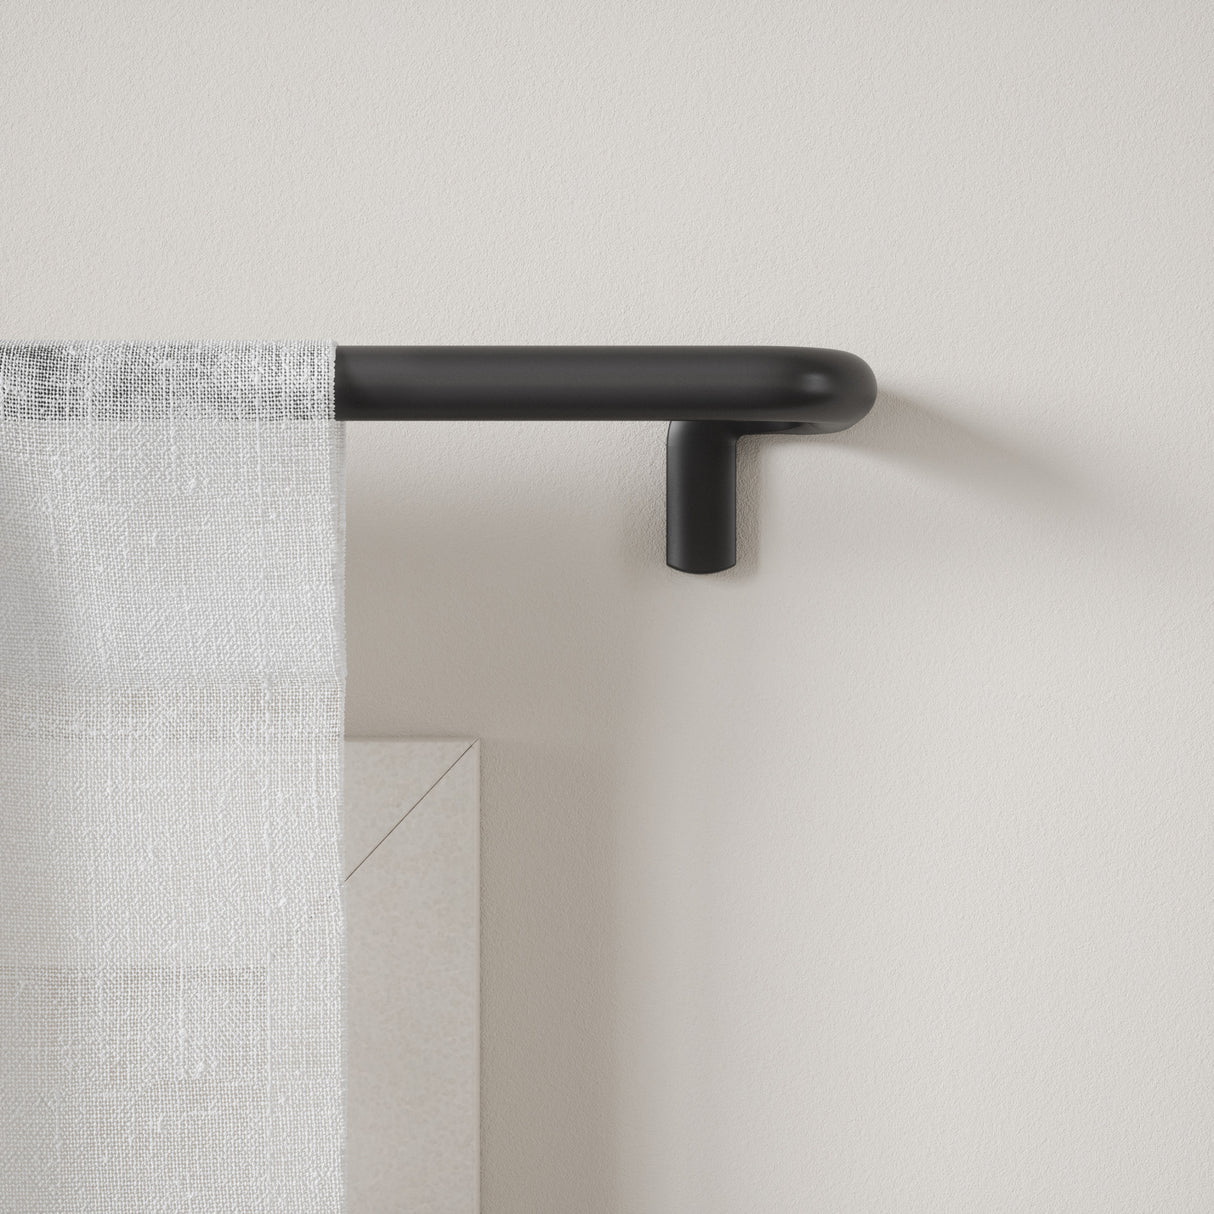 Single Curtain Rods | color: Matte-Black | size: 66-144" (167-365 cm) | diameter: 3/4" (1.9 cm) | Hover